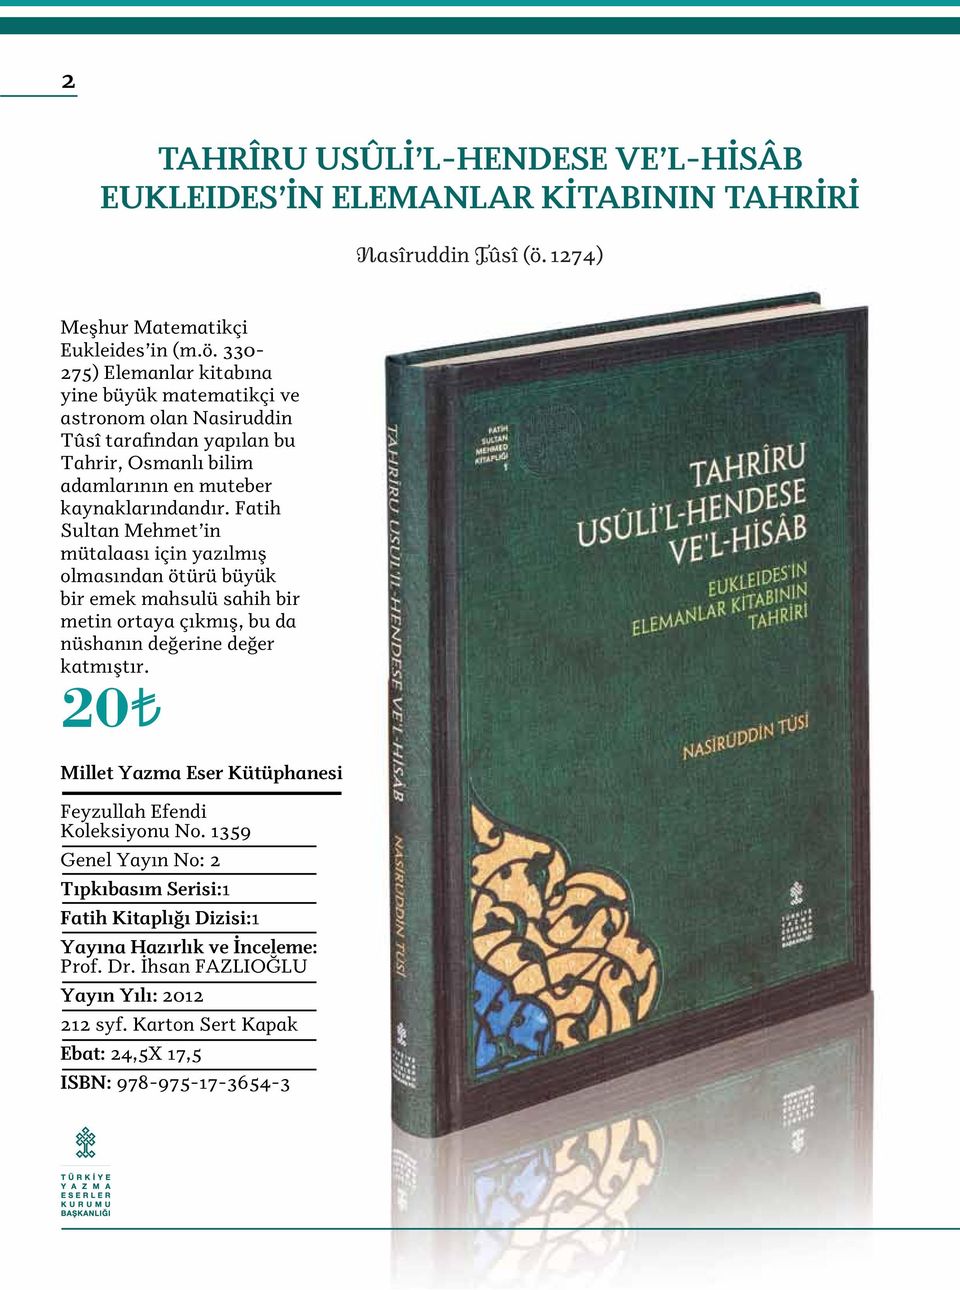 330-275) Elemanlar kitabına yine büyük matematikçi ve astronom olan Nasiruddin Tûsî tarafından yapılan bu Tahrir, Osmanlı bilim adamlarının en muteber kaynaklarındandır.